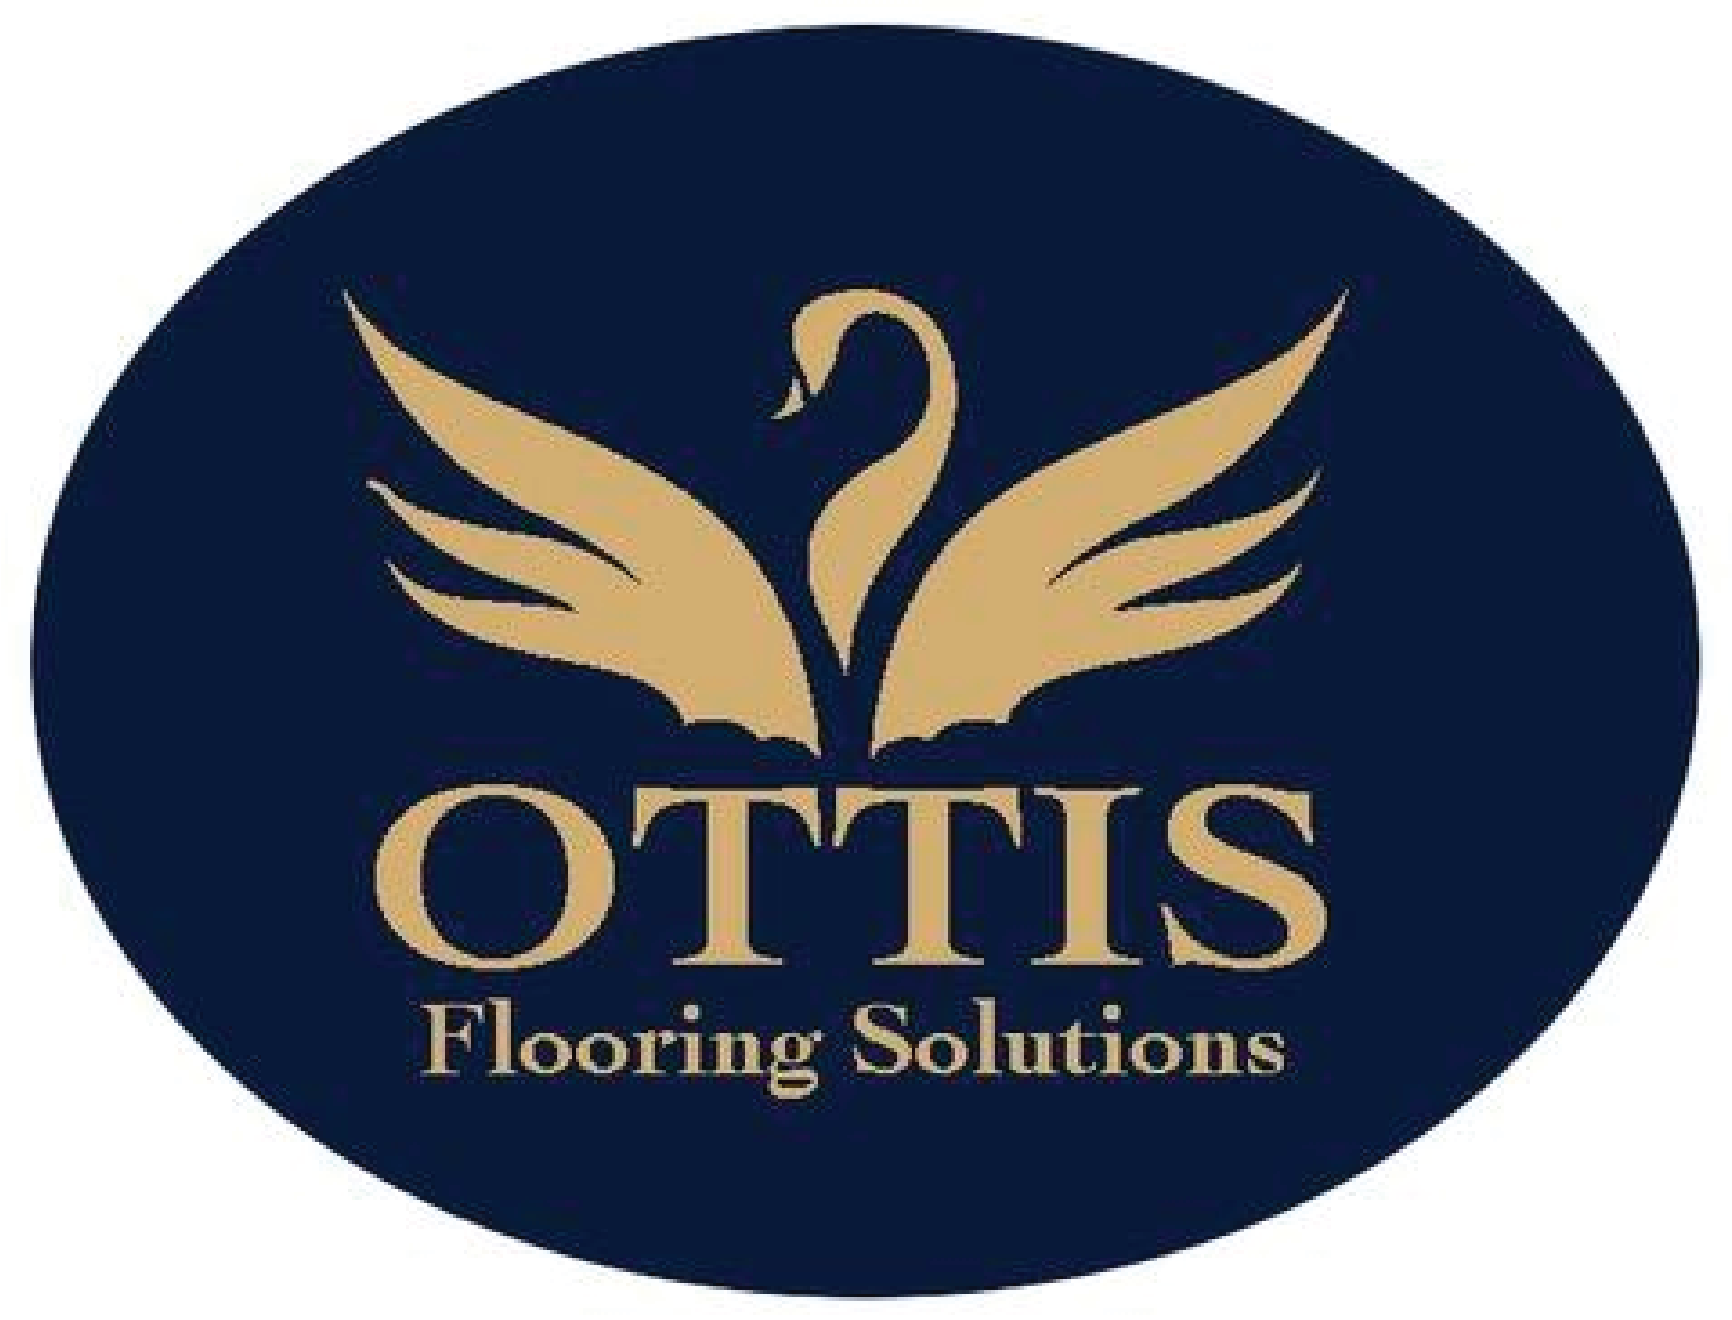 OTTIS logo old